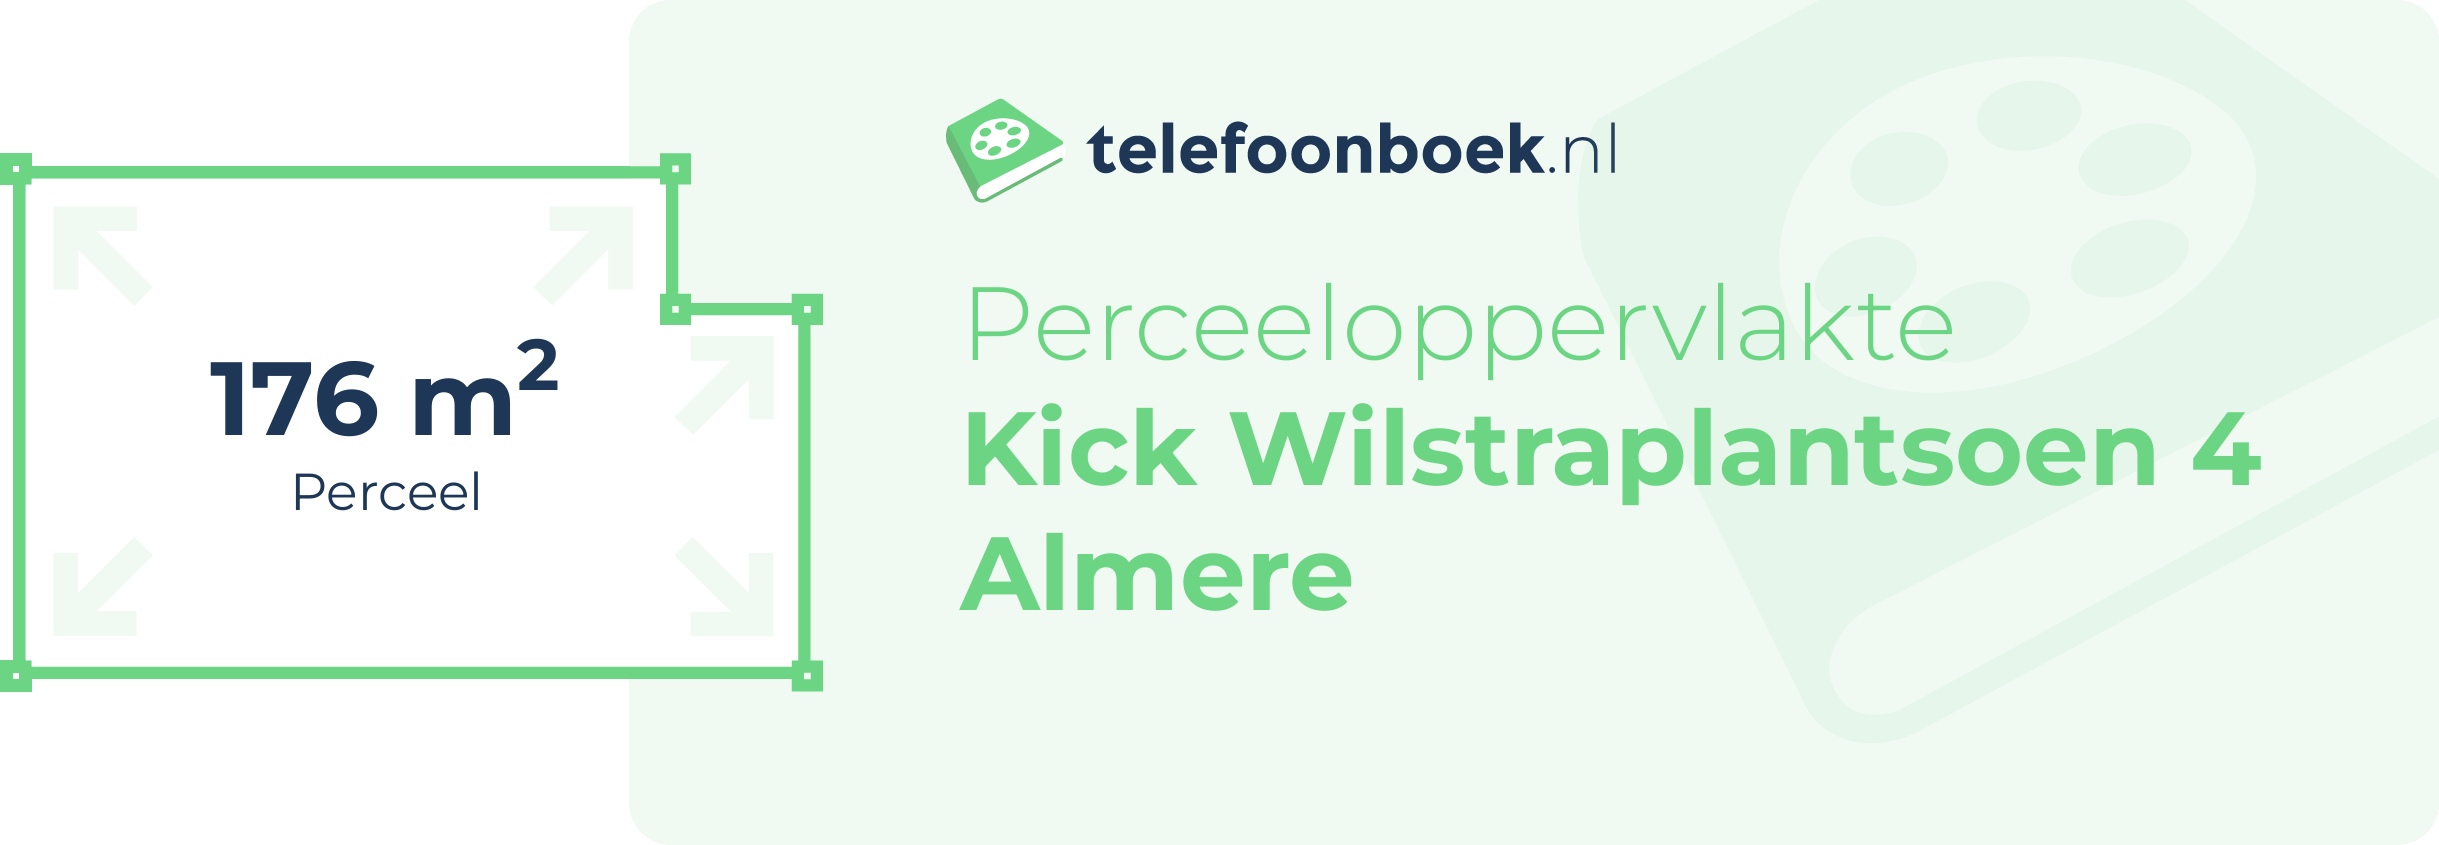 Perceeloppervlakte Kick Wilstraplantsoen 4 Almere